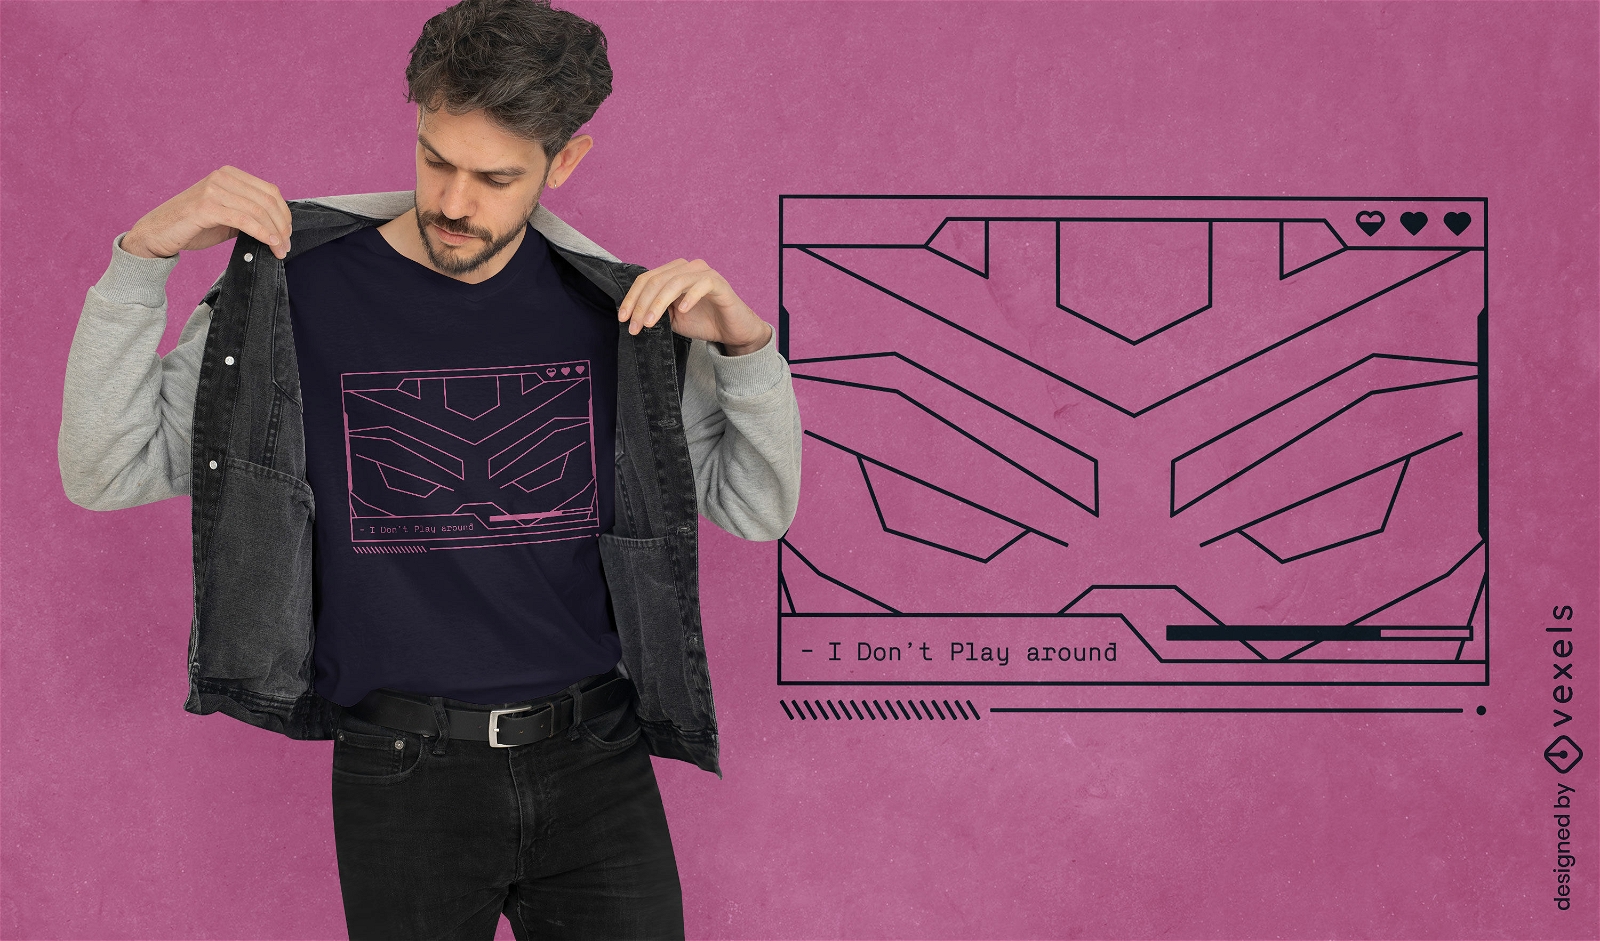 Spielen Sie nicht mit dem Design von Vaporwave-Gaming-T-Shirts herum